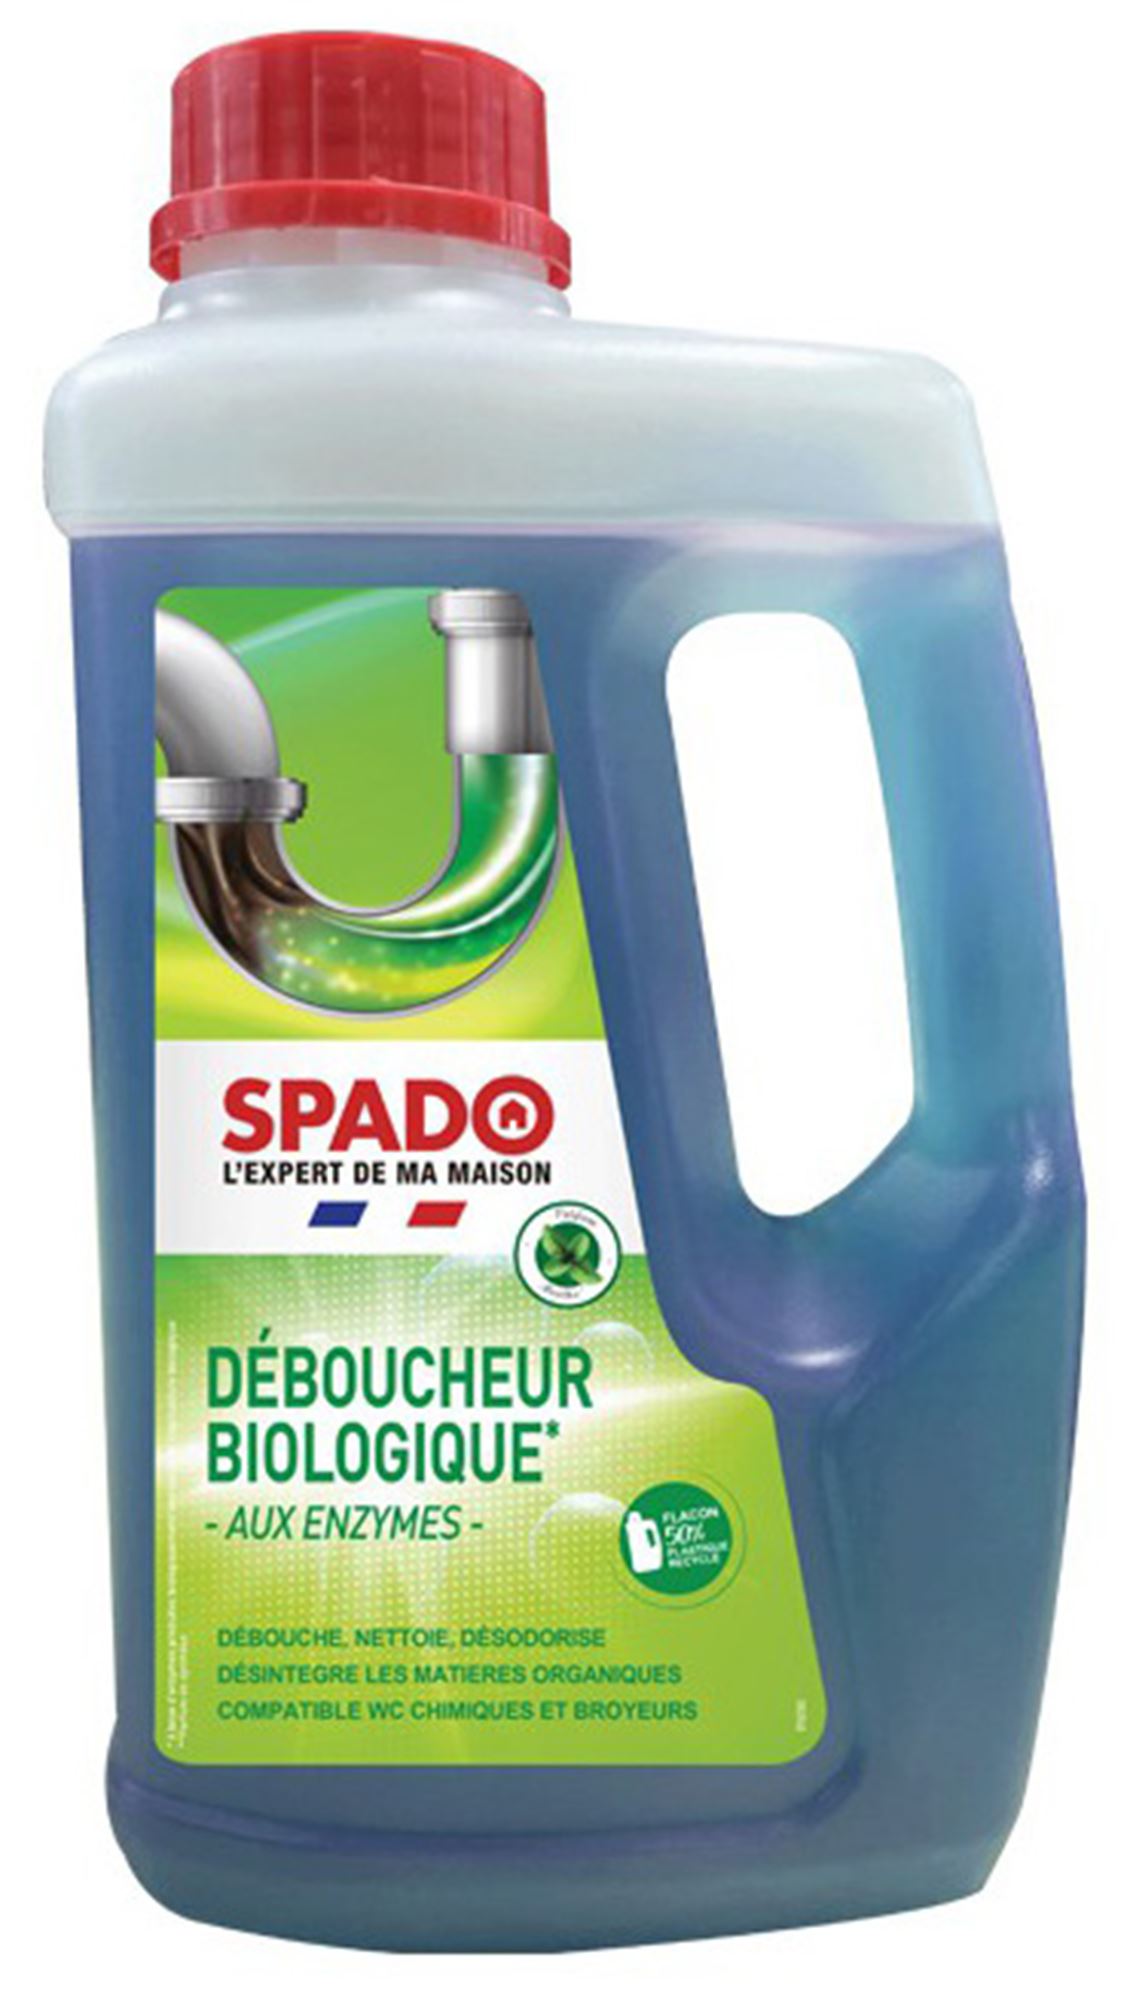 Spado Deboucheur Wc Microbilles 1k - SPADO - 126146